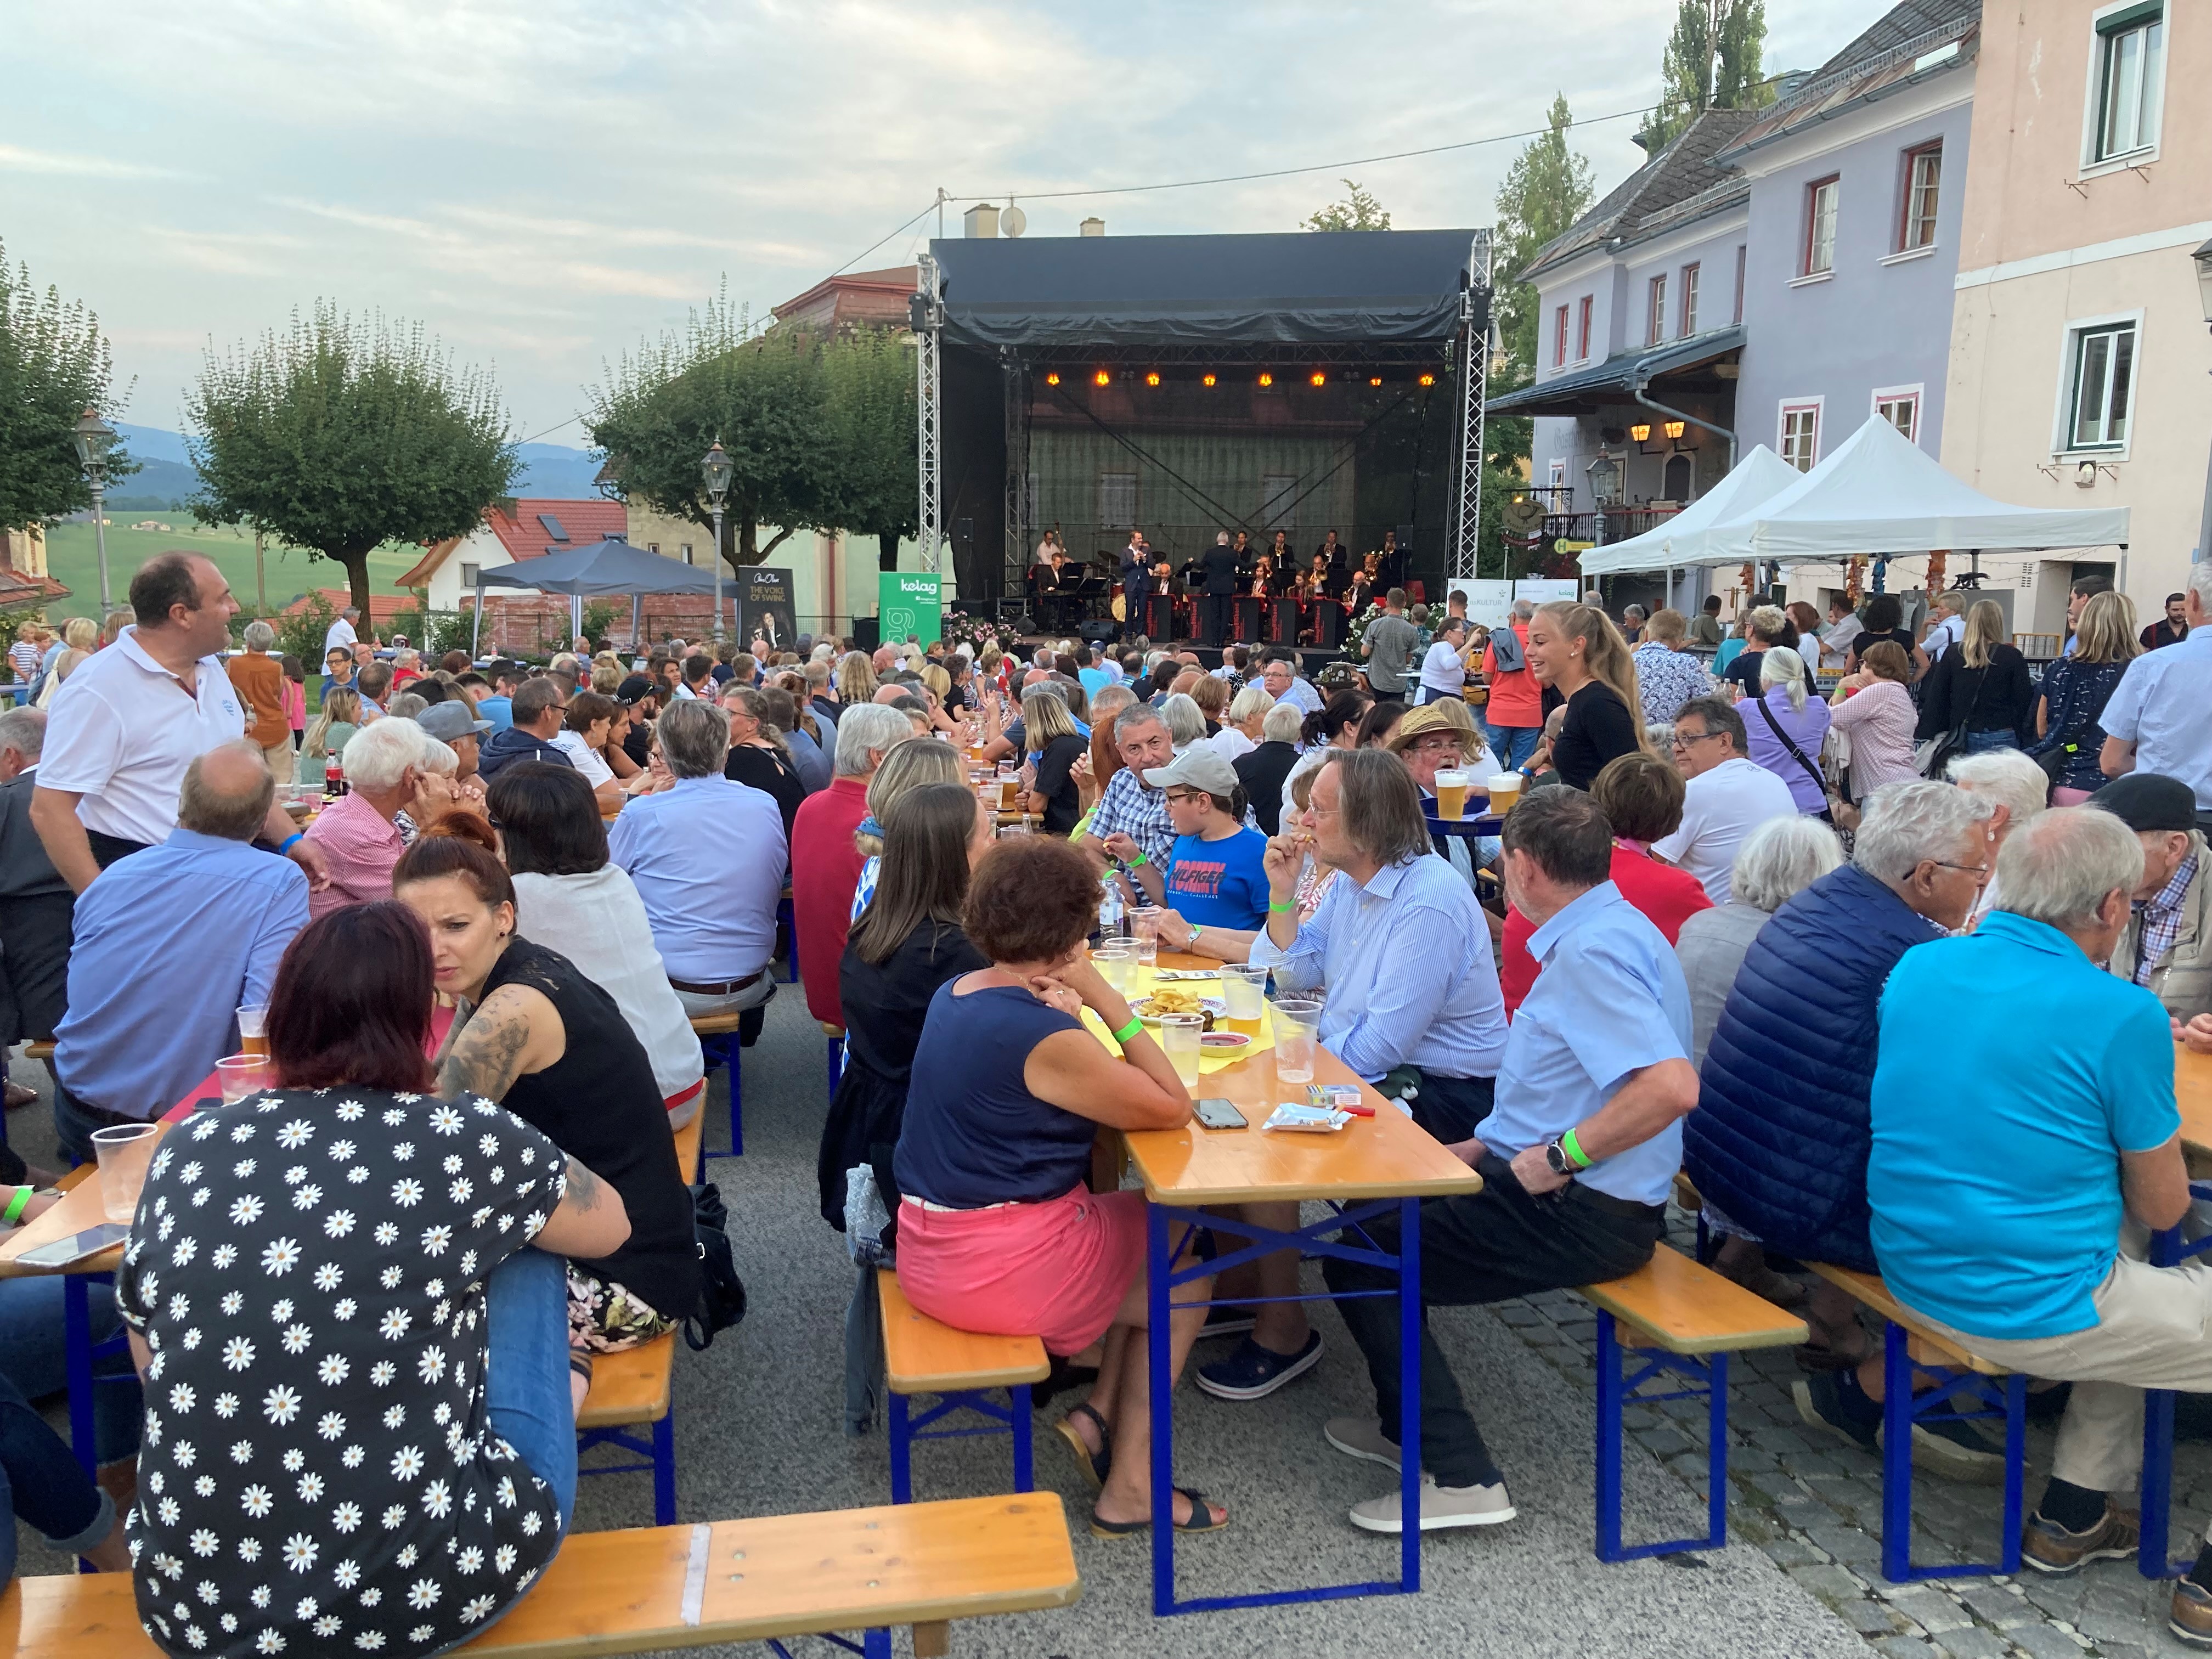 2021 ging das Altstadt Sommer Festival erstmals über die Bühne und lockte bereits im ersten Jahr an die 4.000 Besucherinnen und Besucher nach Althofen